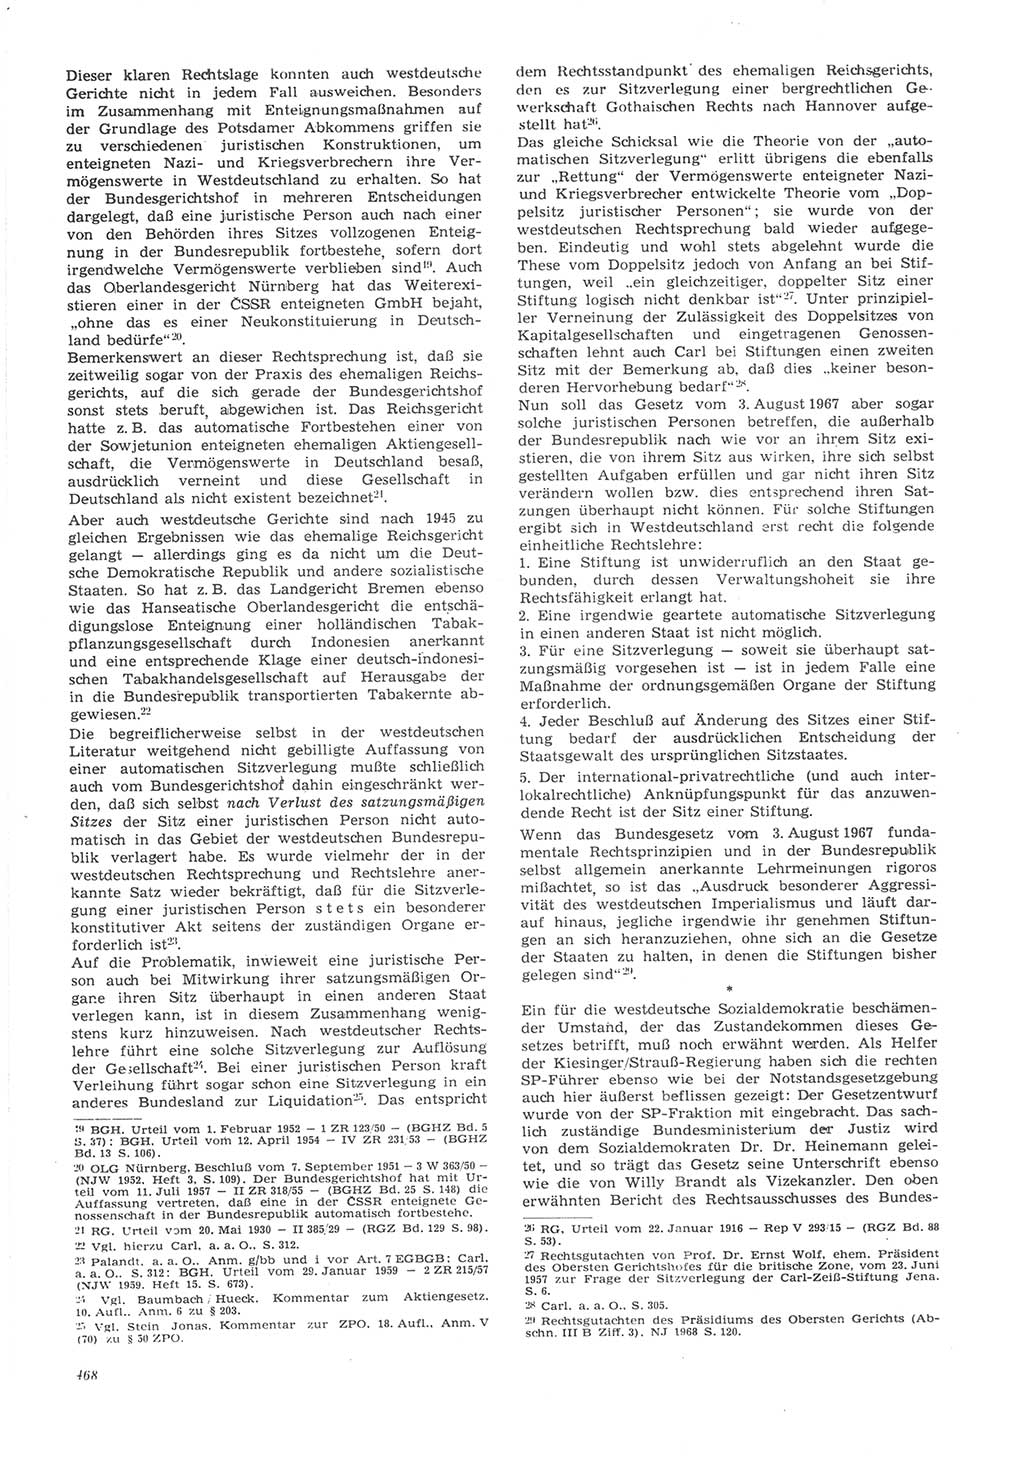 Neue Justiz (NJ), Zeitschrift für Recht und Rechtswissenschaft [Deutsche Demokratische Republik (DDR)], 22. Jahrgang 1968, Seite 468 (NJ DDR 1968, S. 468)